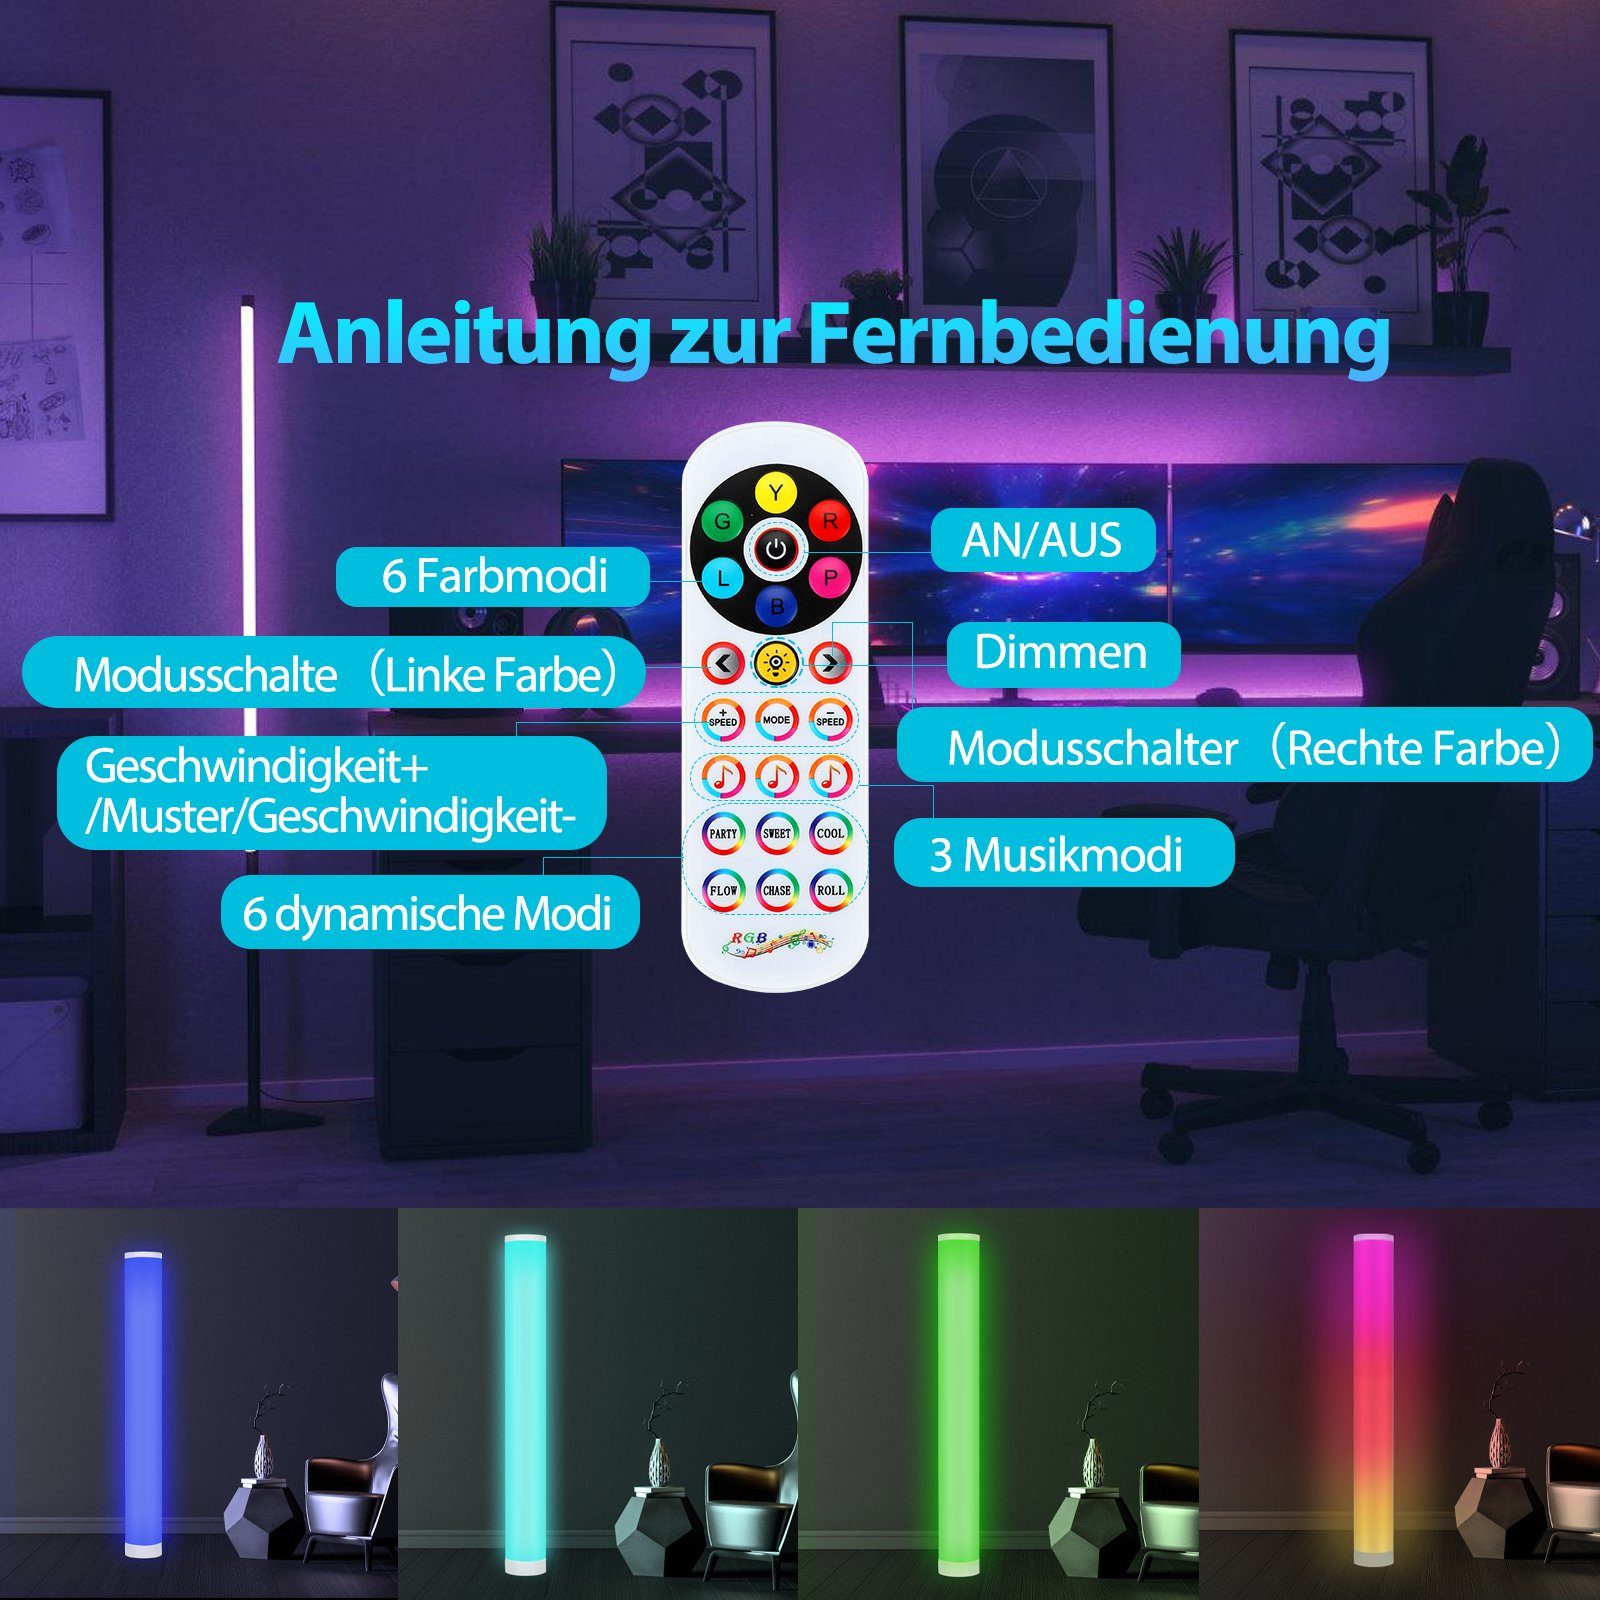 RGB Deckenfluter LED 6W Stehlampe Clanmacy bunt Eckleuchte Lichtsäule Stehleuchte Stehlampe Stand LED